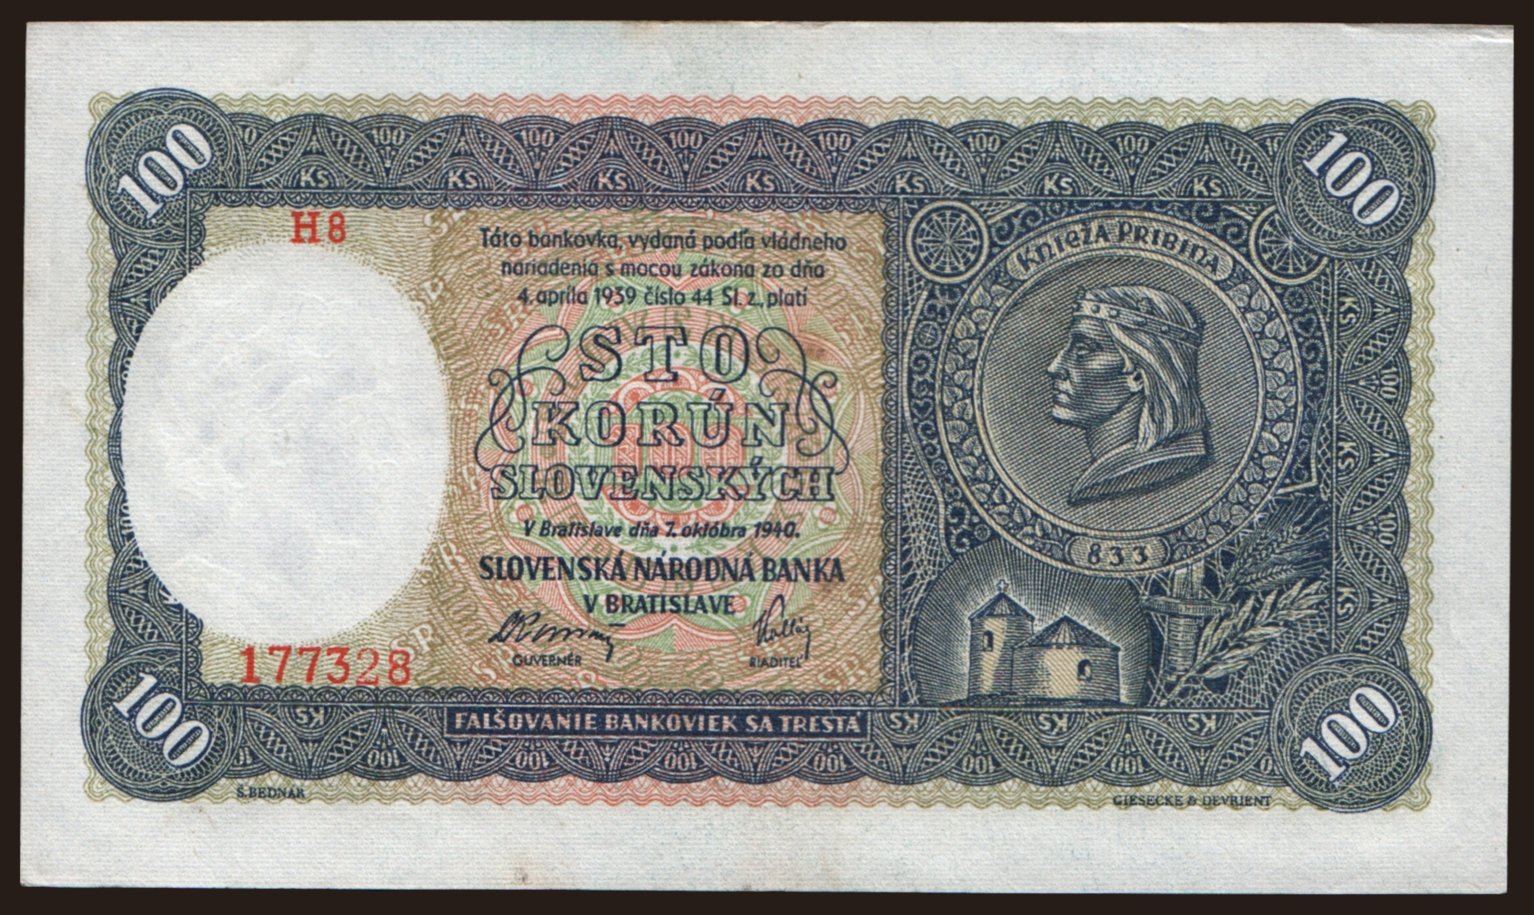 100 Ks, 1940